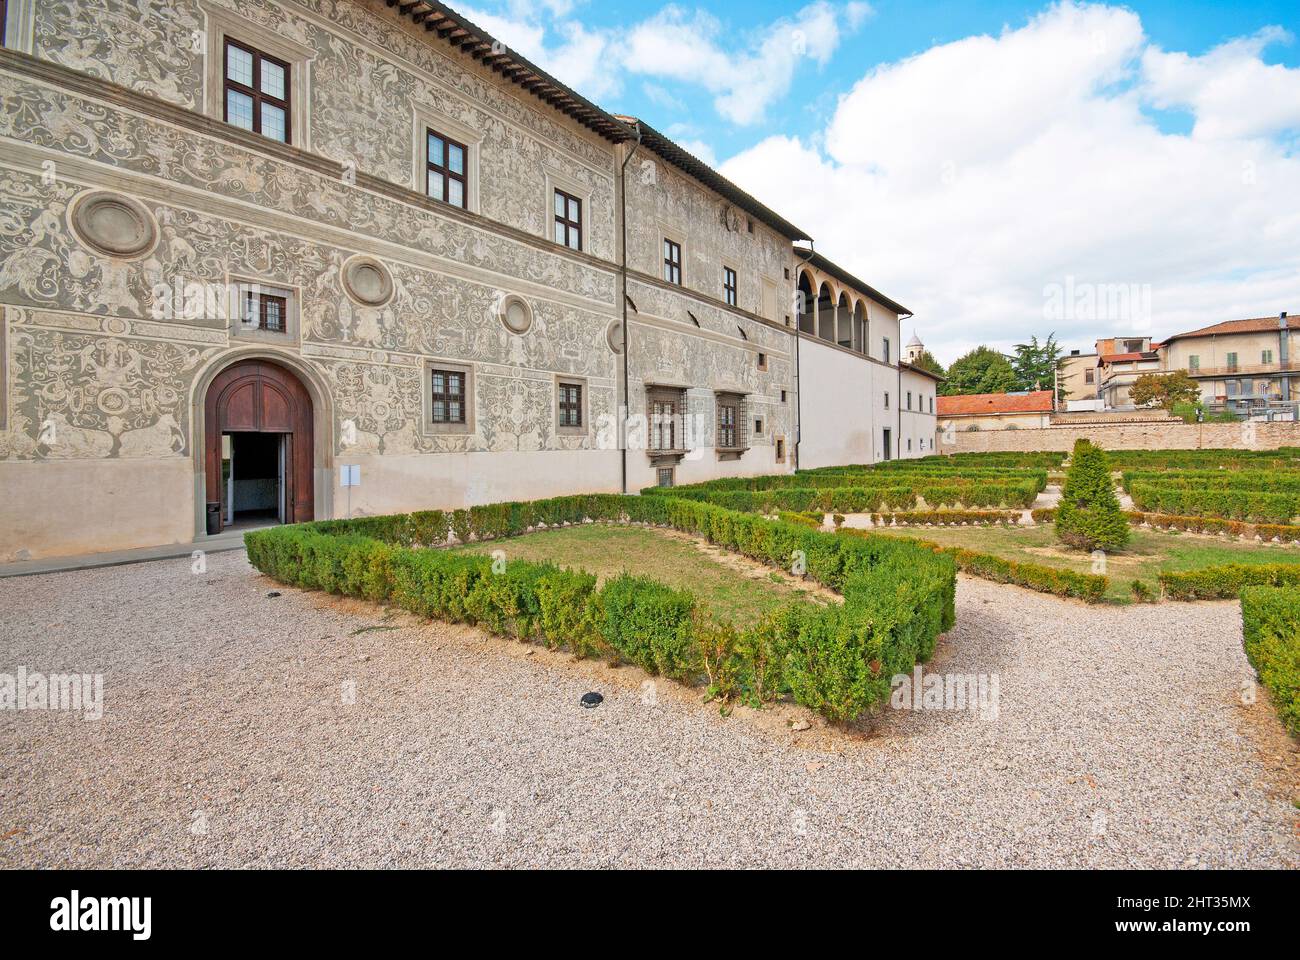 Palazzo Vitelli alla Cannoniera (maison de la galerie d'art municipale) et jardins, Città di Castello, haute vallée du Tibre, Ombrie, Italie Banque D'Images